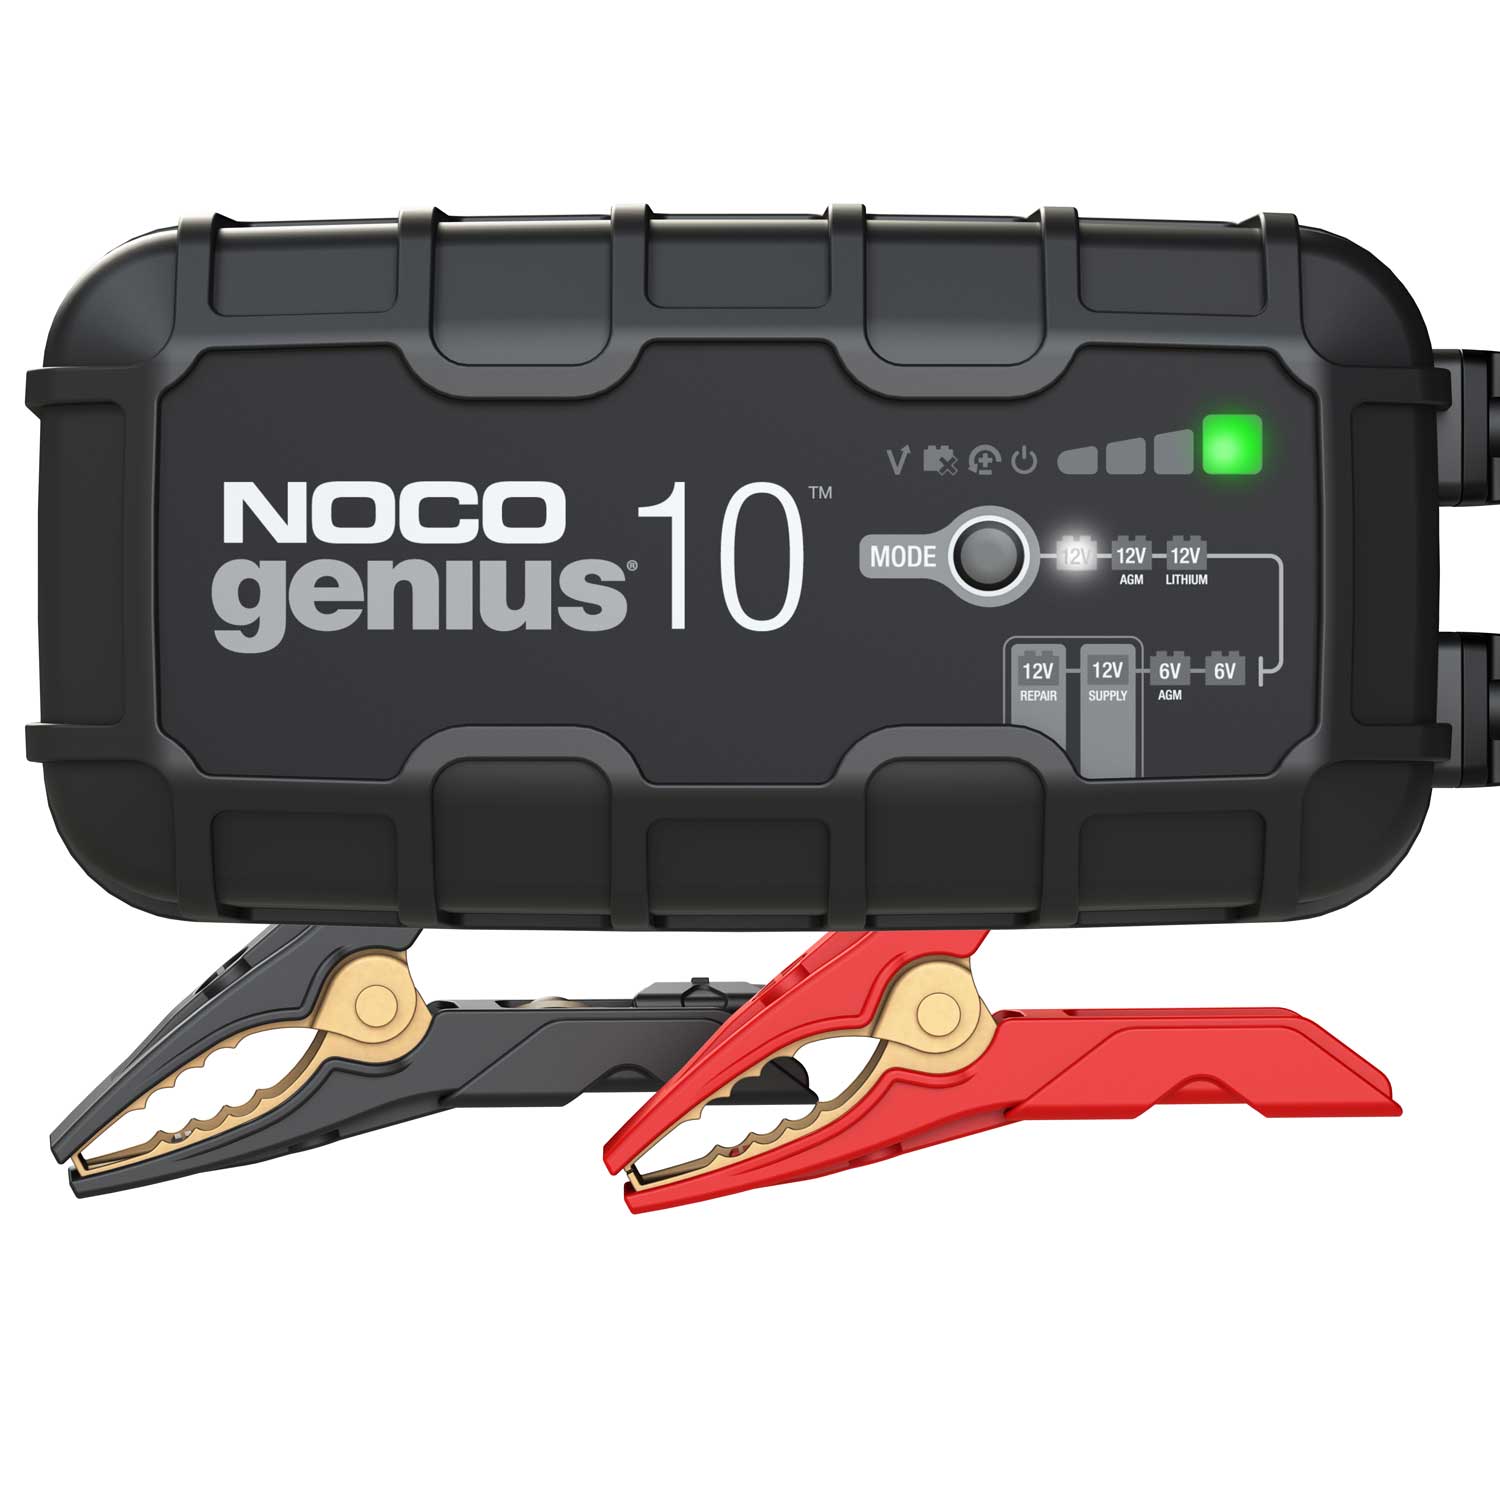 Noco GENIUS10 EU Batterie-Ladegerät 6V/ 12V 10A für Blei- und Lithium-Akkus bis 230Ah mit Krokodilklemmen und Kabelschuhen